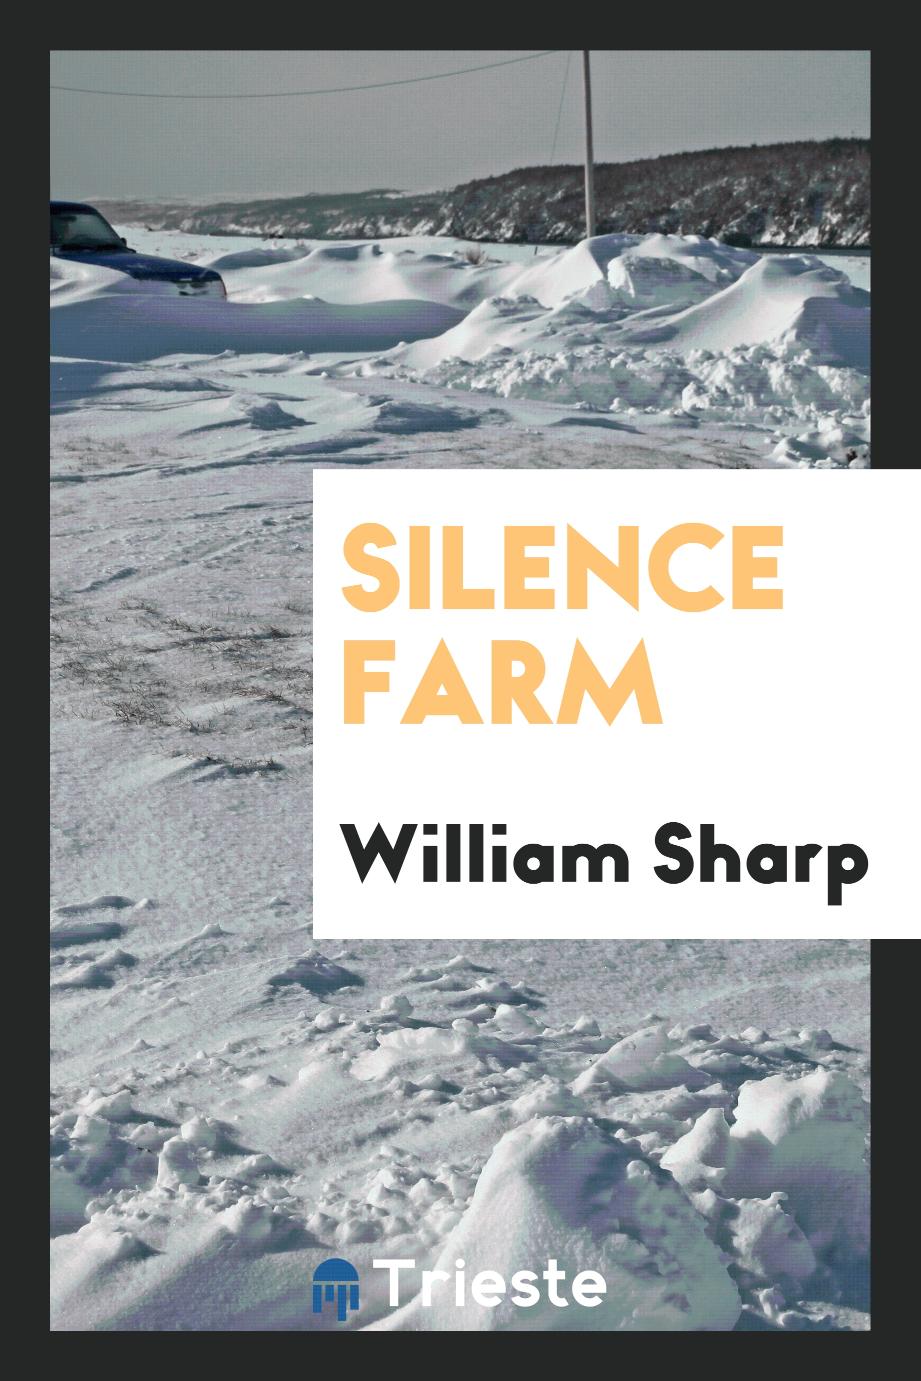 Silence farm